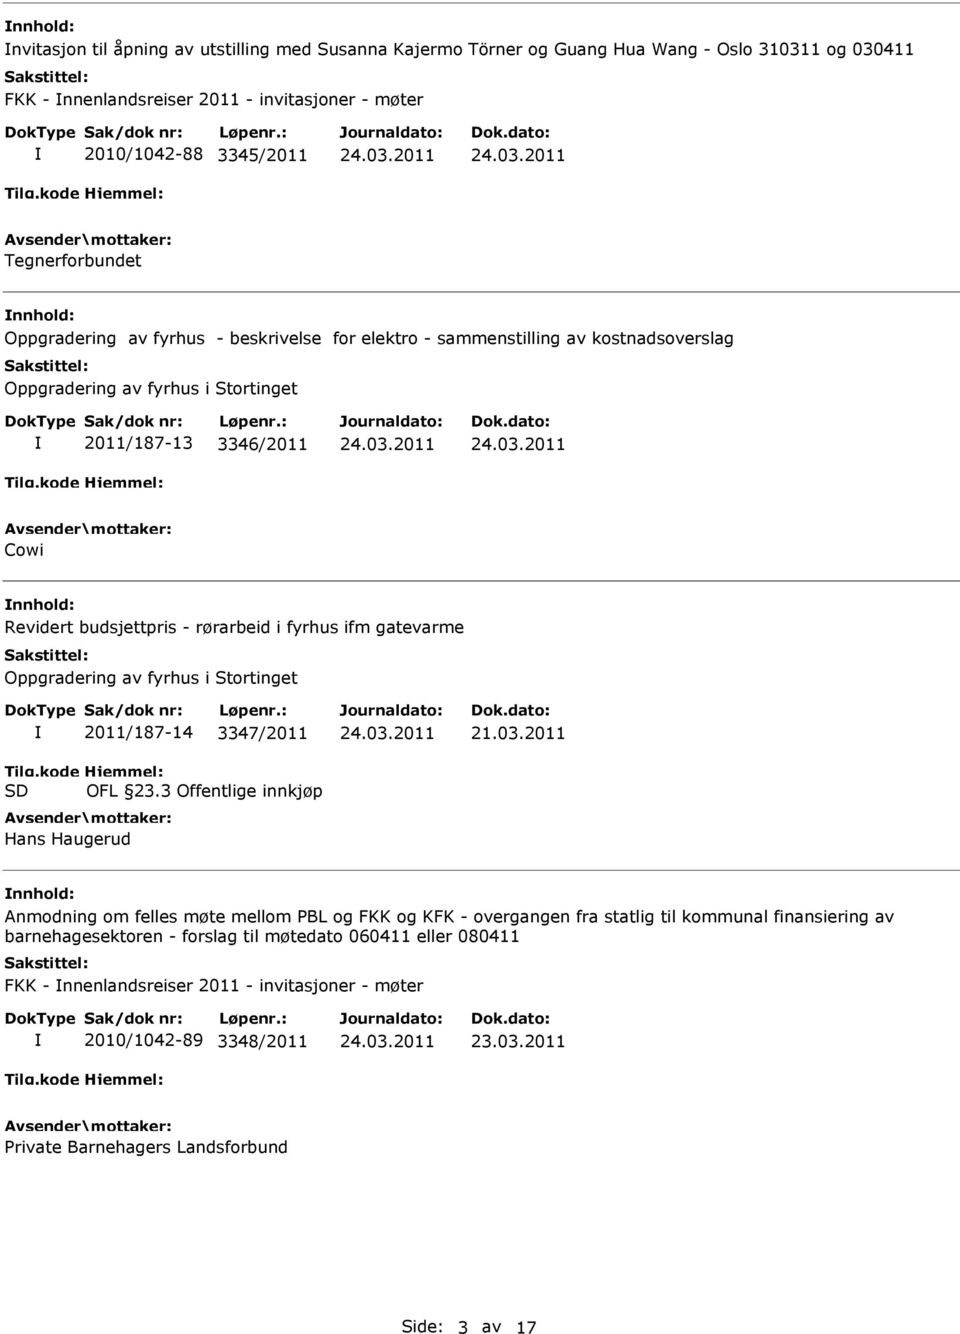 gatevarme Oppgradering av fyrhus i Stortinget 2011/187-14 3347/2011 OFL 23.3 Offentlige innkjøp Hans Haugerud 21.03.